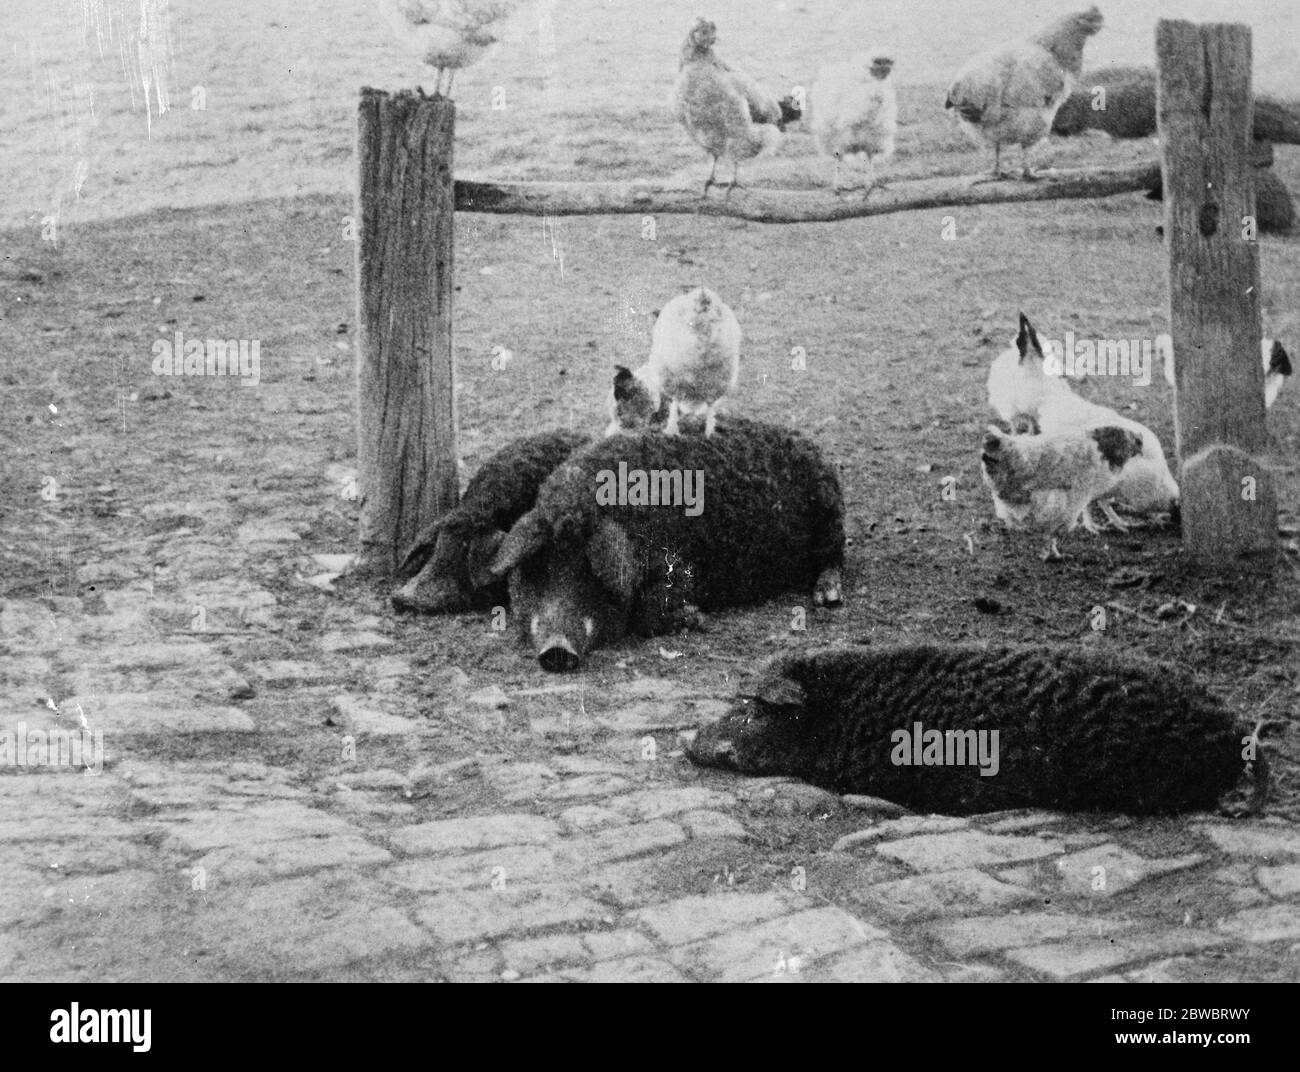 Mesokovesd, Ungheria. Intorno alla capanna di herdsmans ci sono diversi animali domestici . A giudicare dalla posizione della gallina sulla schiena del maiale, i polli e i suini devono essere amichevoli, tranne che all' ora dei pasti. Notare i capelli ricci dei maiali . 1925 Foto Stock